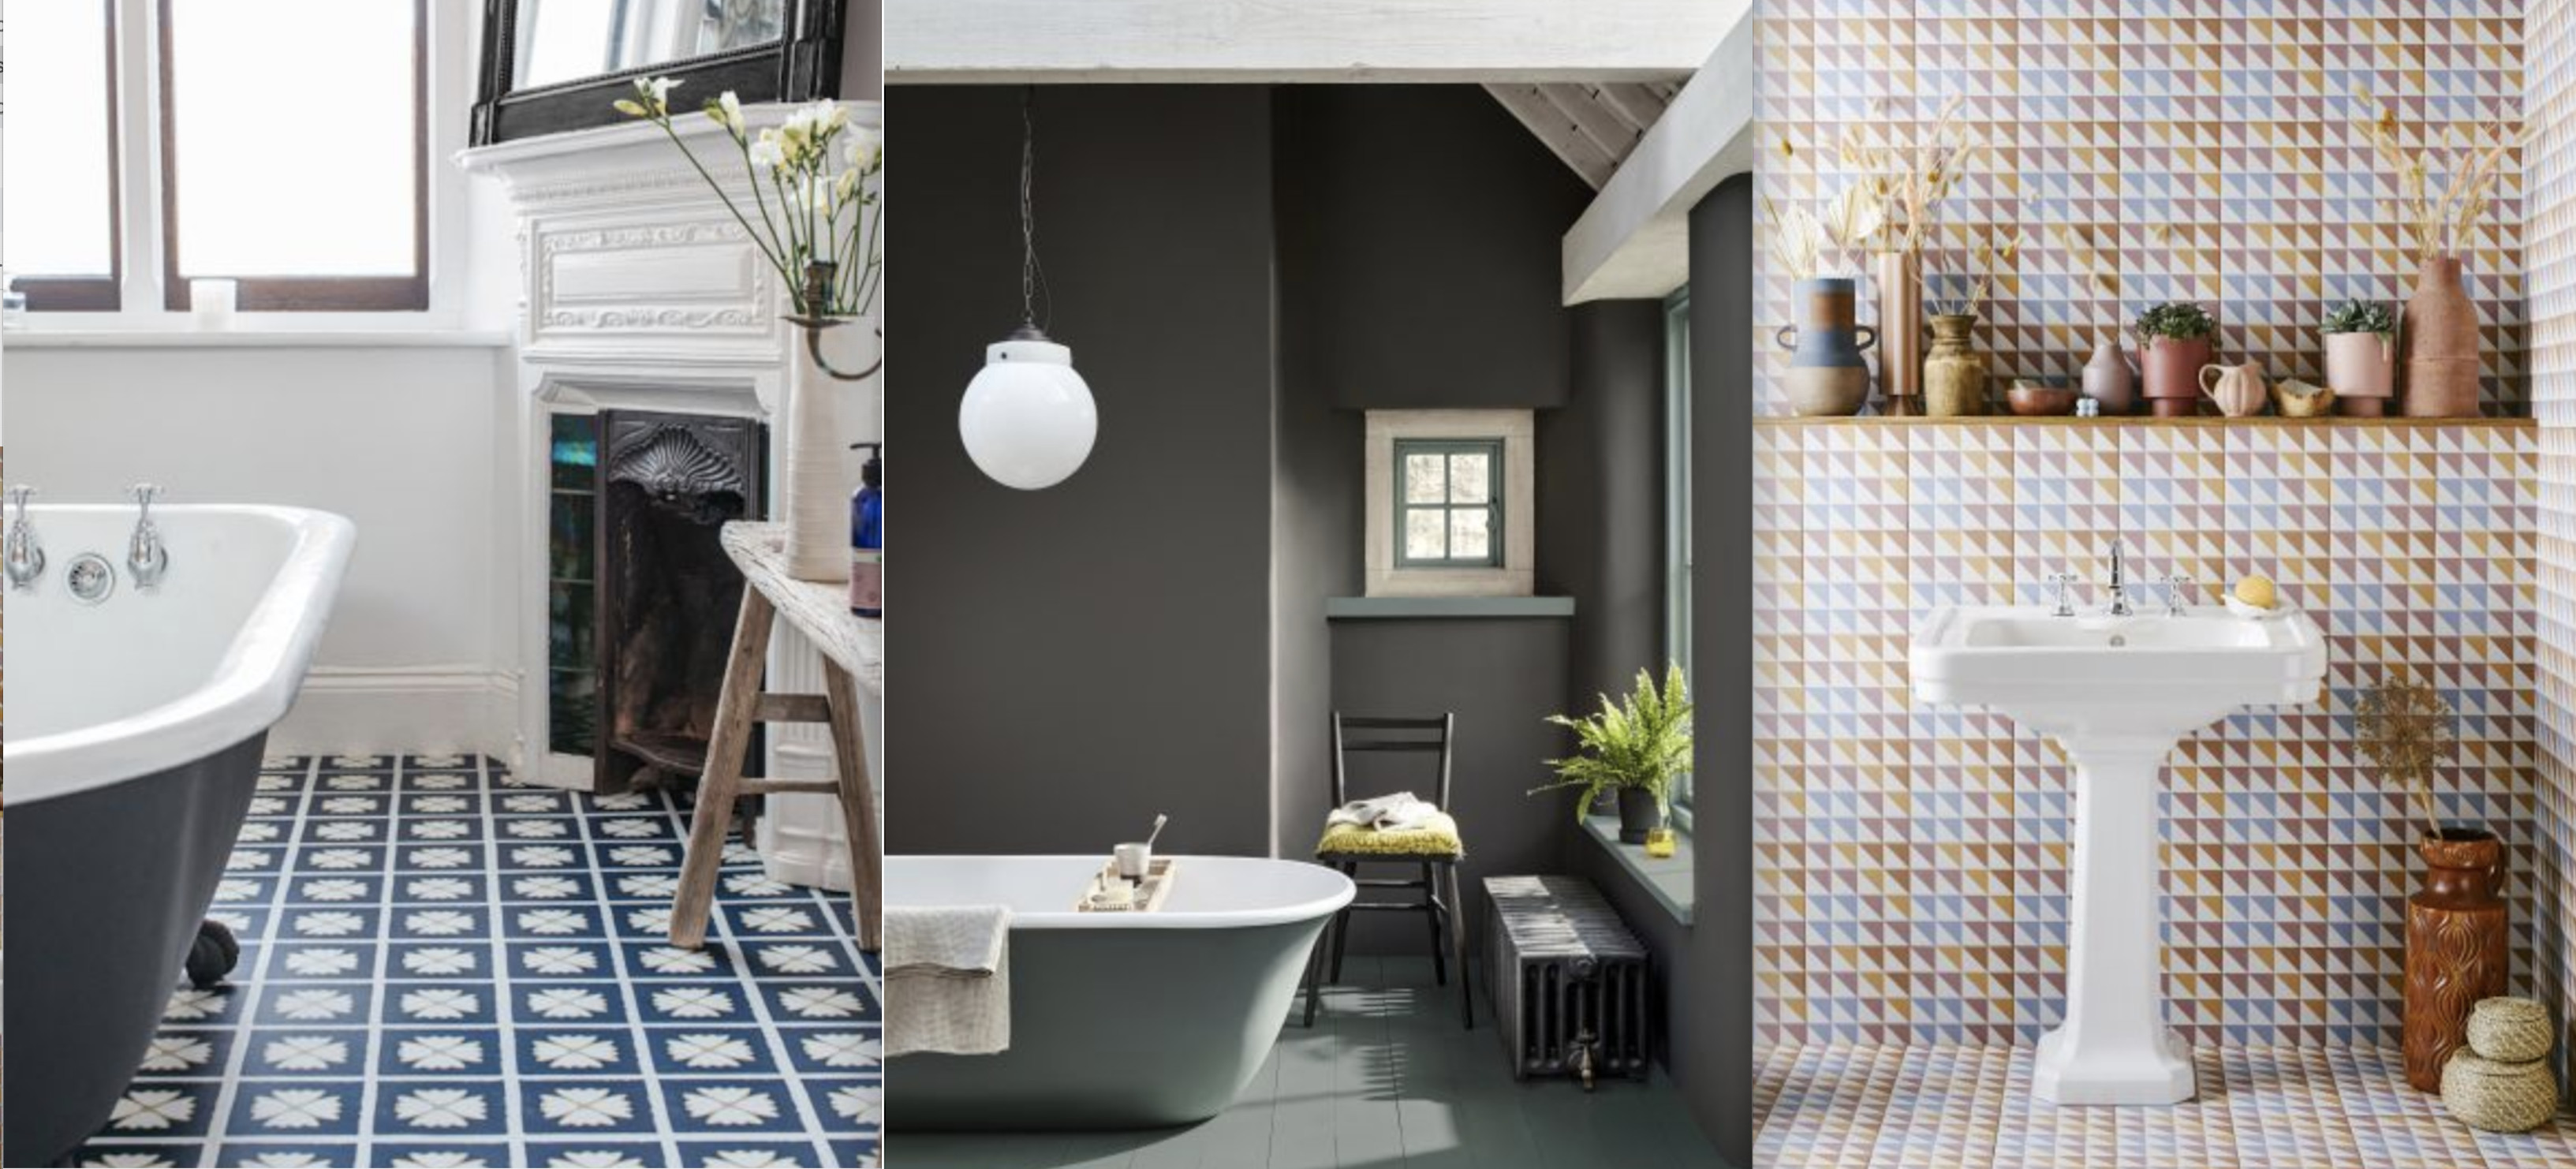 Bathroom flooring ideas: 12 fabulous floor ideas for bathrooms | Homes ...